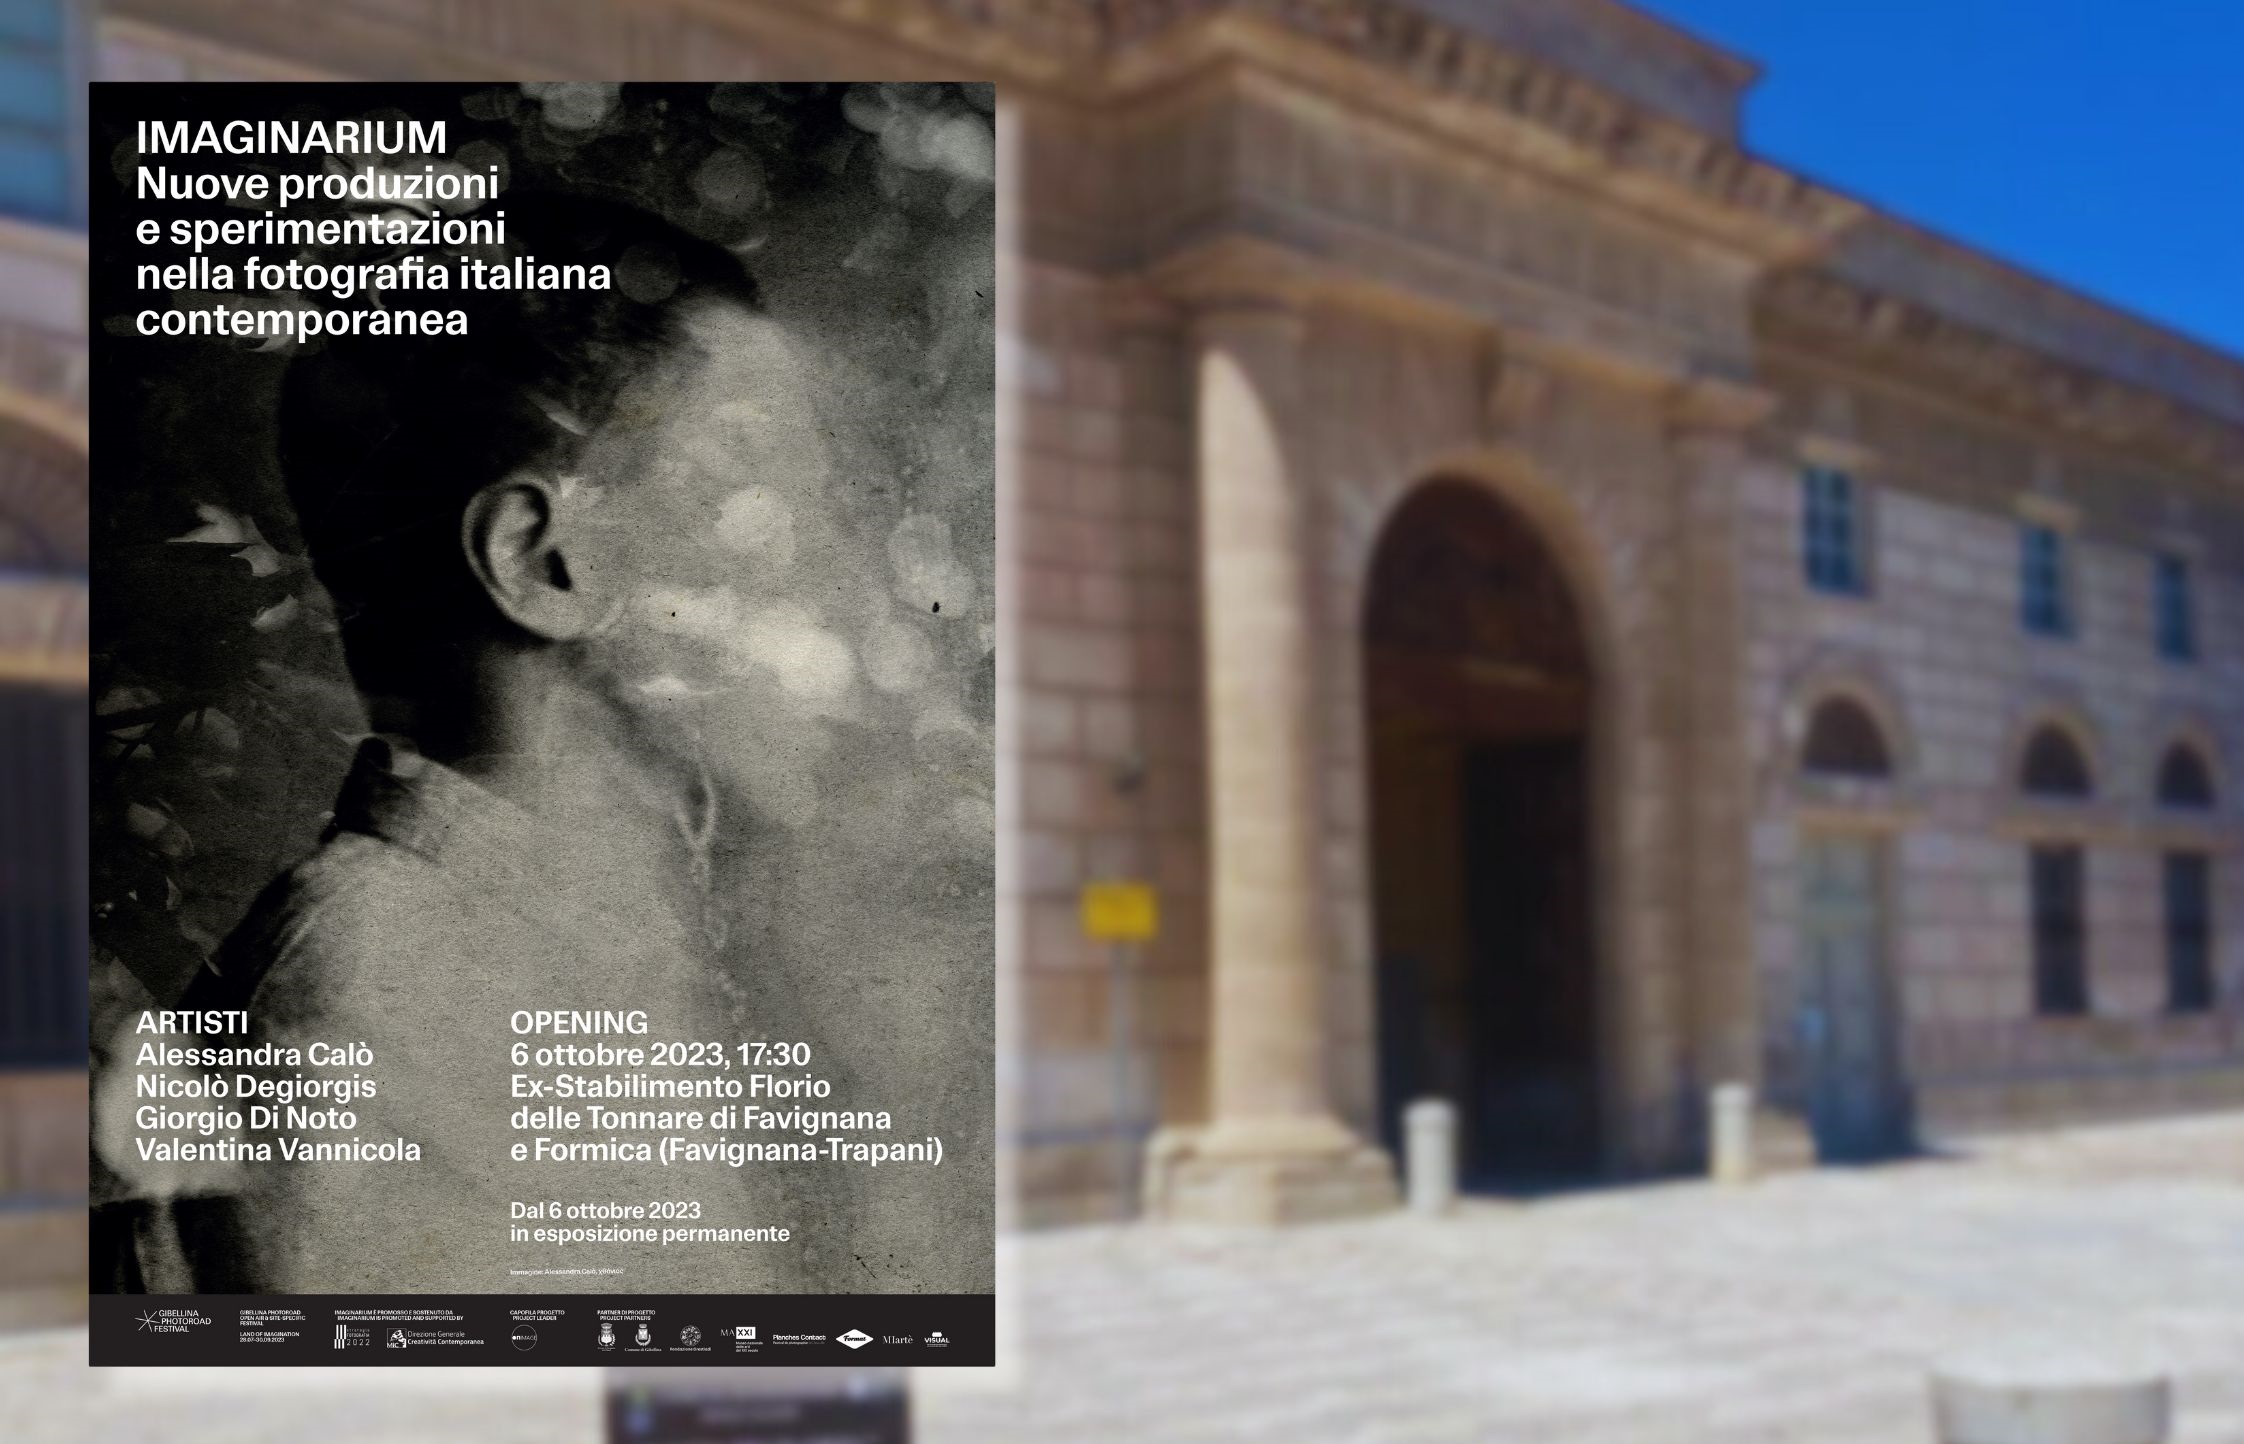 Il 6 ottobre all’ex Stabilimento Florio l’inaugurazione della mostra “Imaginarium: nuove produzioni e sperimentazioni nella fotografia italiana contemporanea”